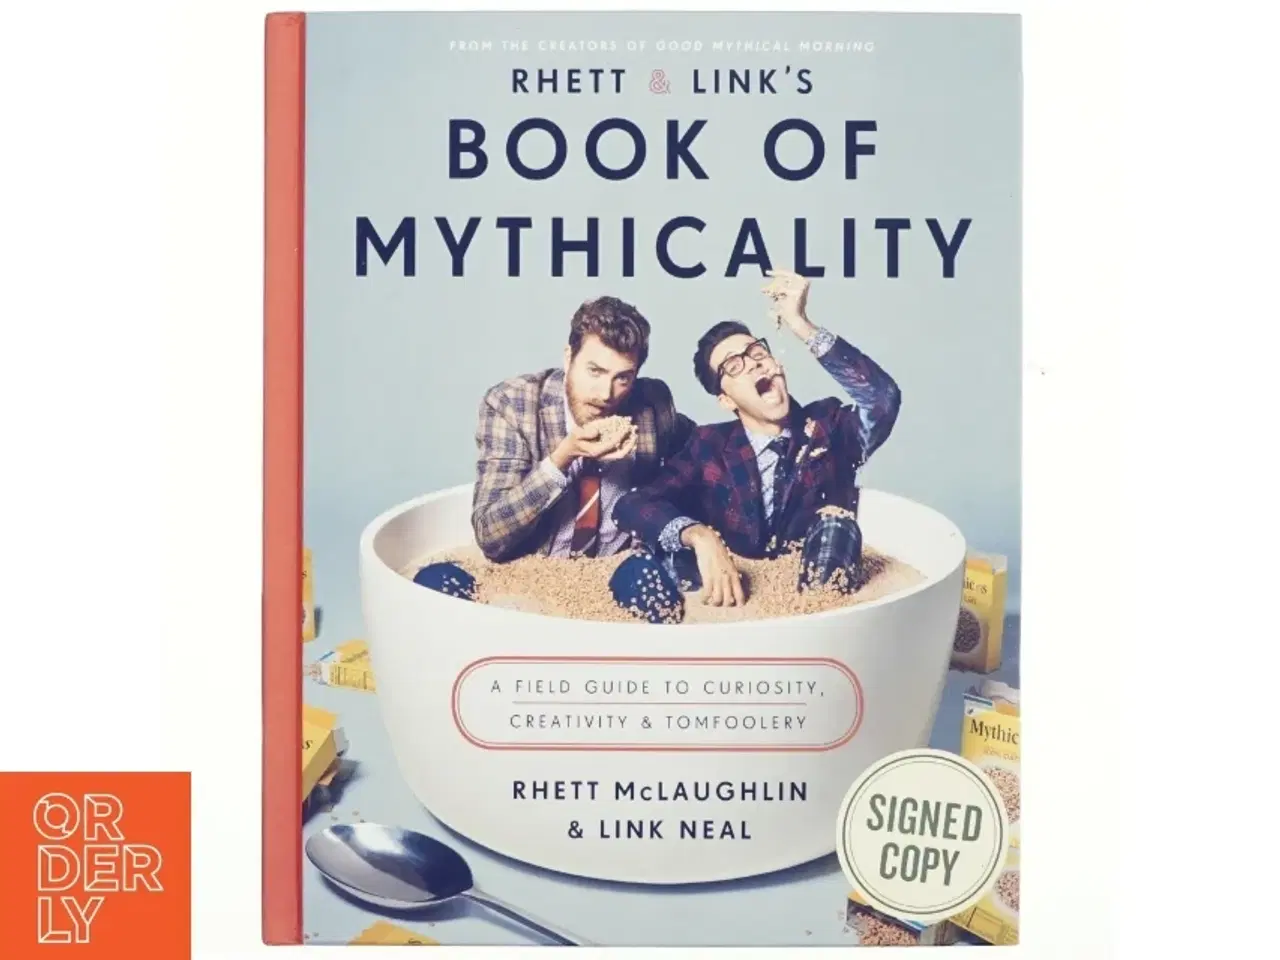 Billede 1 - Rhett & Link's book of mythicality